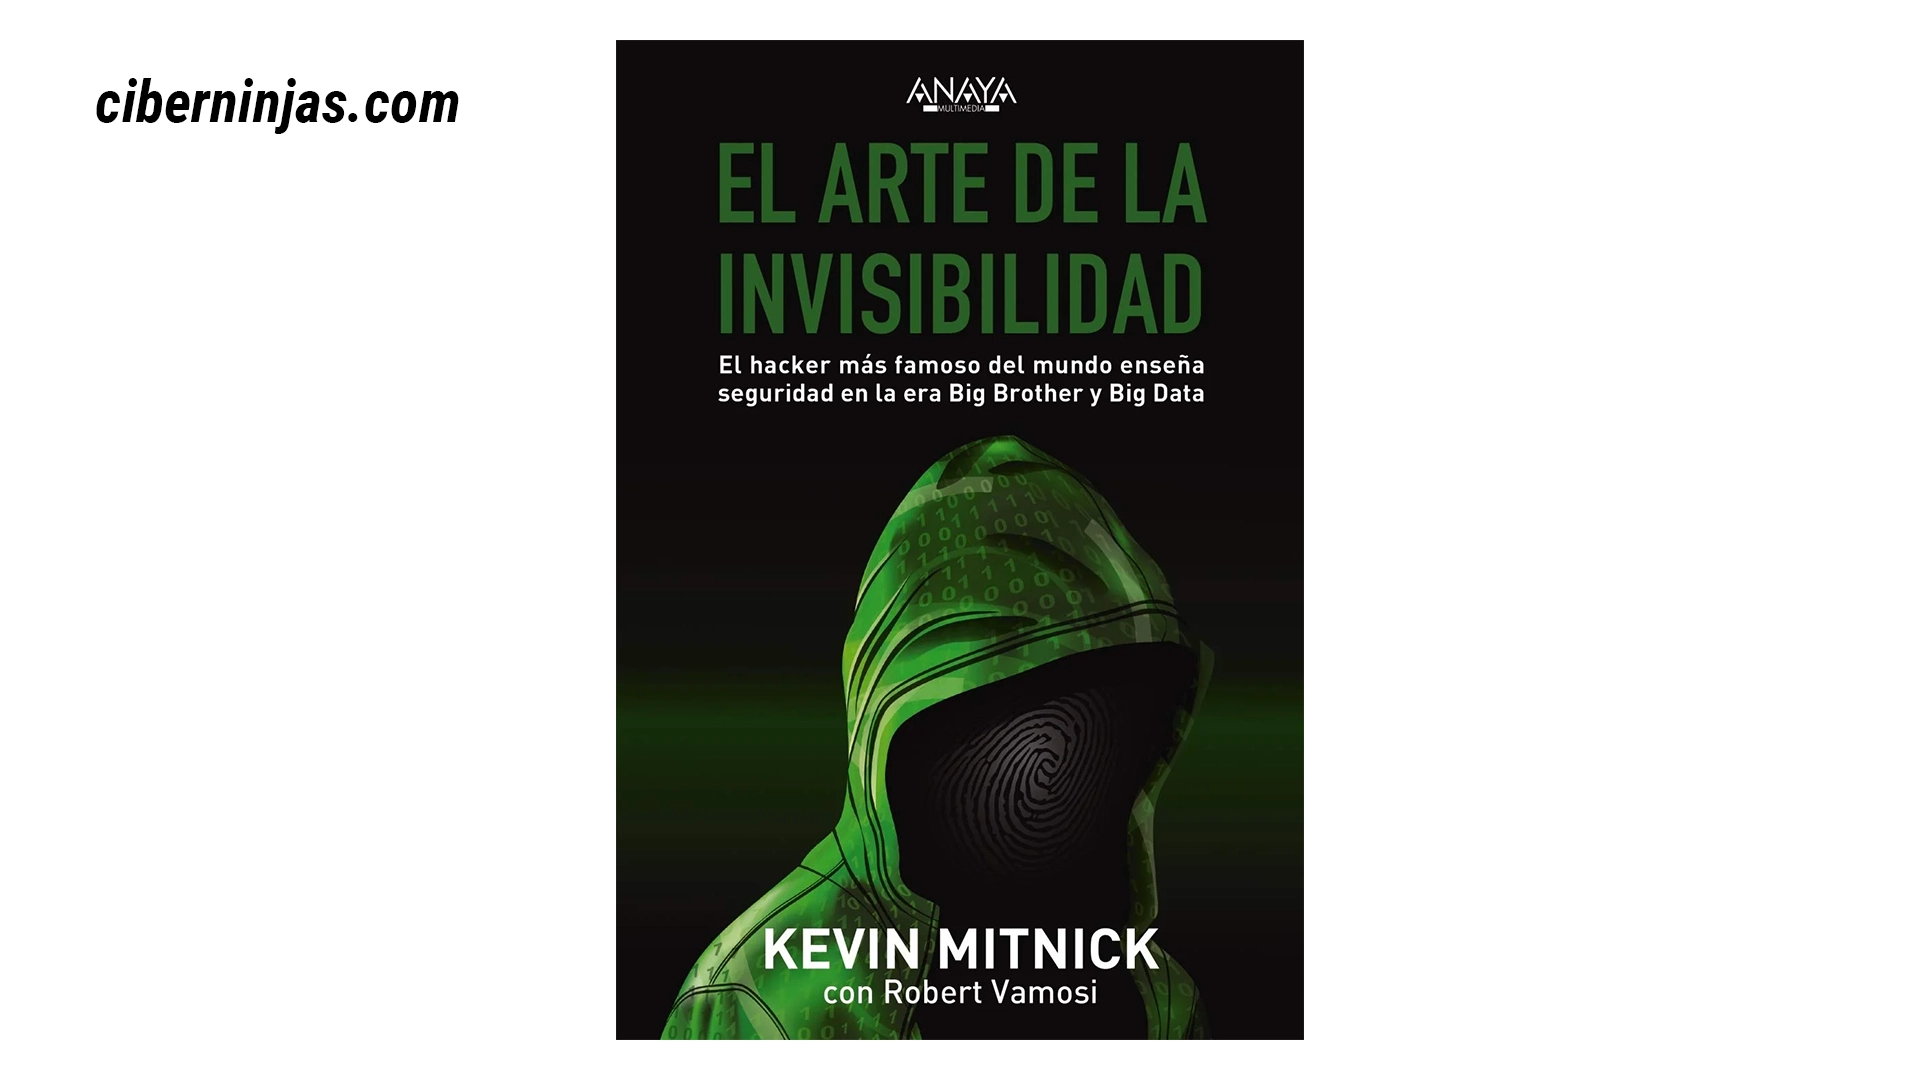 Libro El Arte de la Invisibilidad escrito por Kevin Mitnick